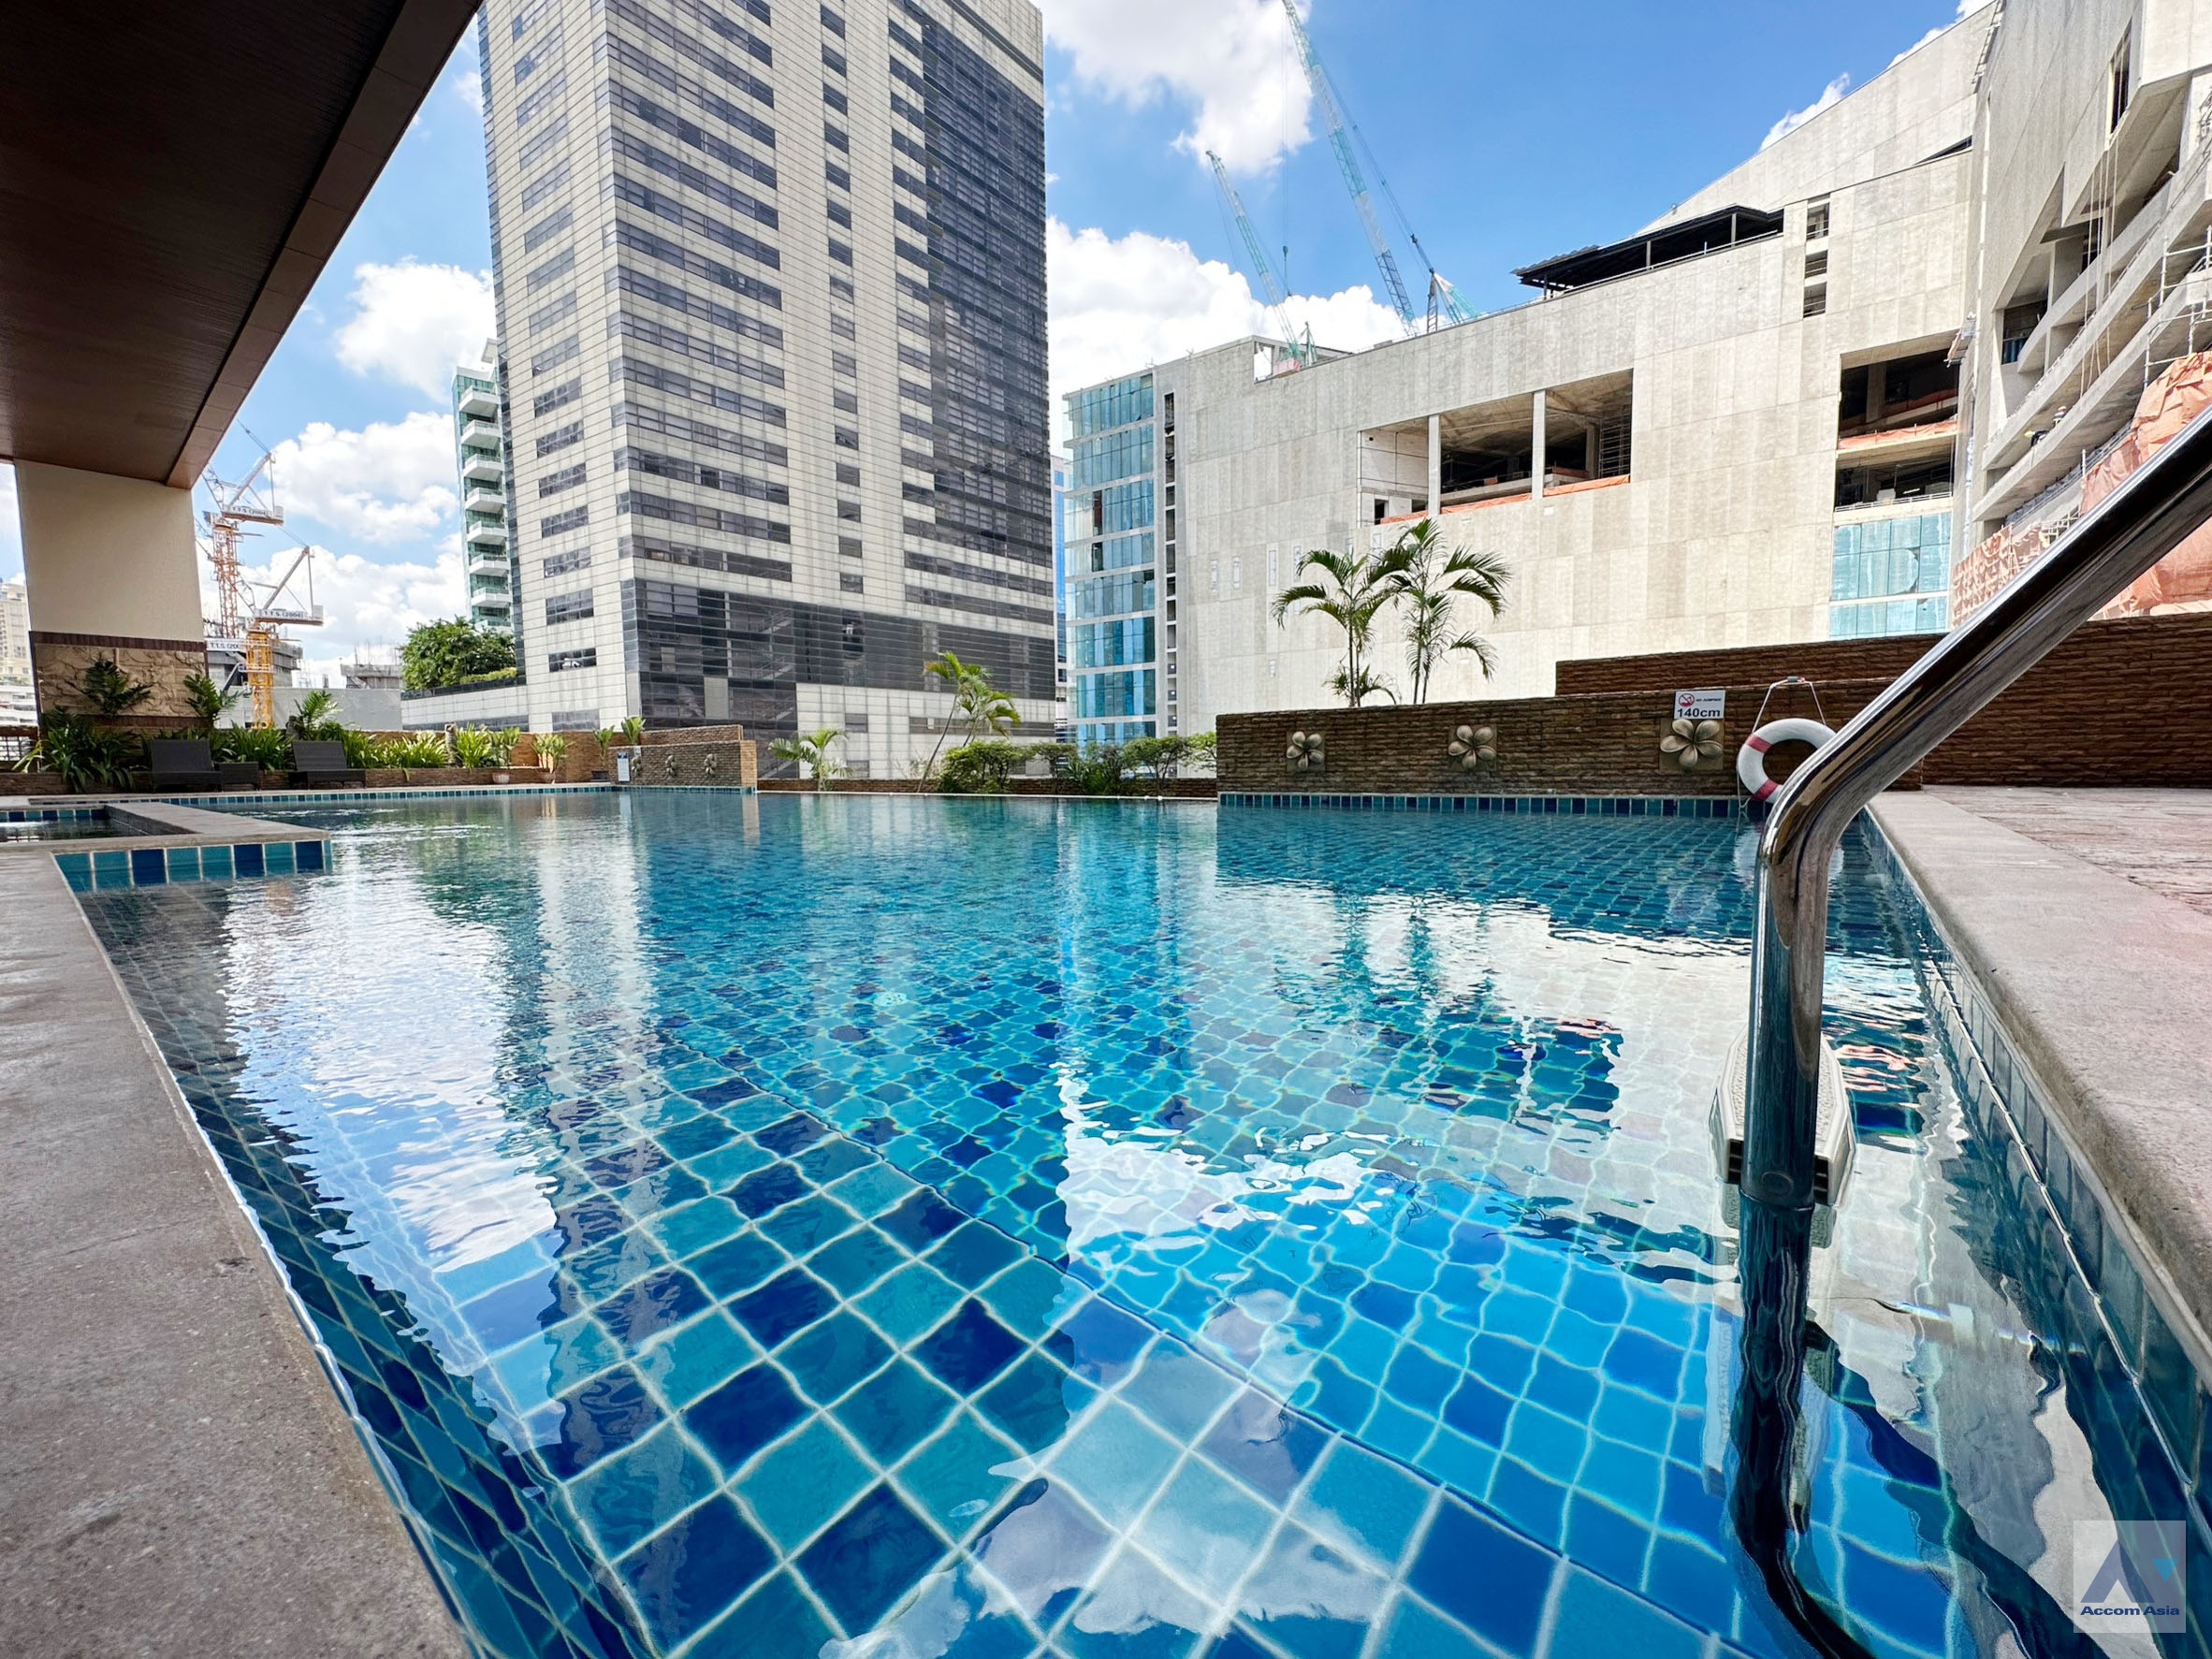  3 High-quality facility - Apartment - Sukhumvit - Bangkok / Accomasia